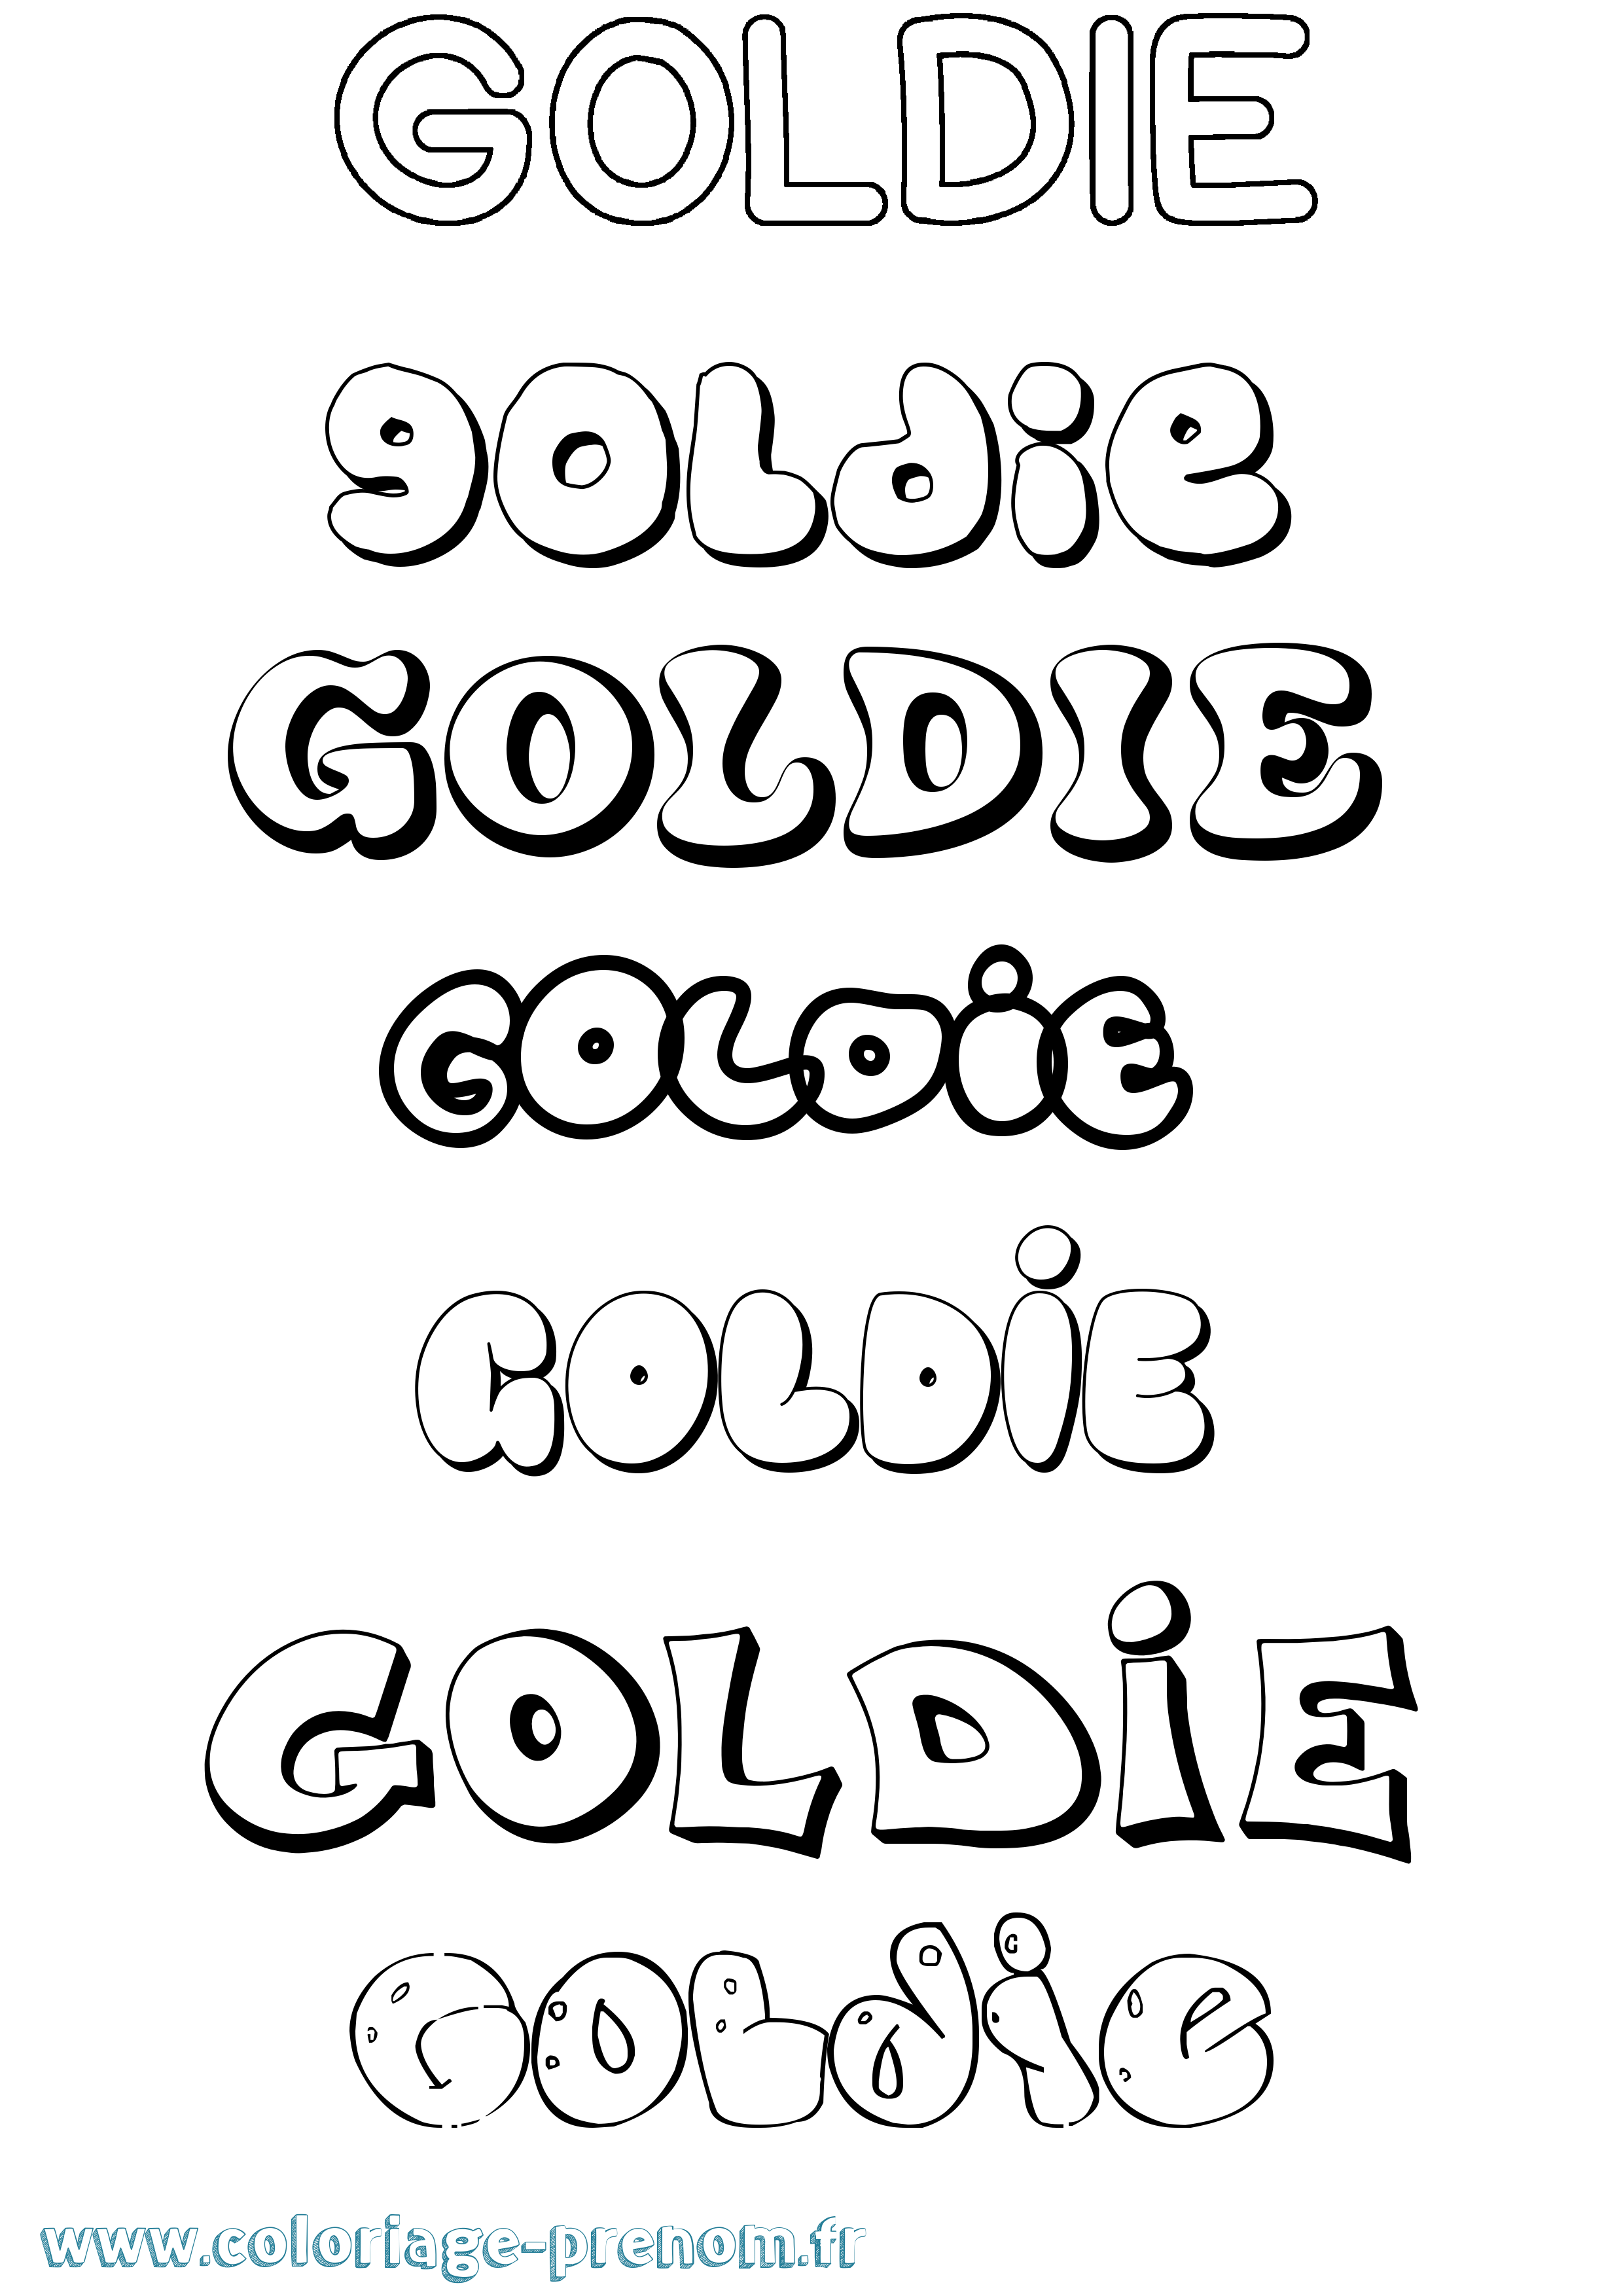 Coloriage prénom Goldie Bubble